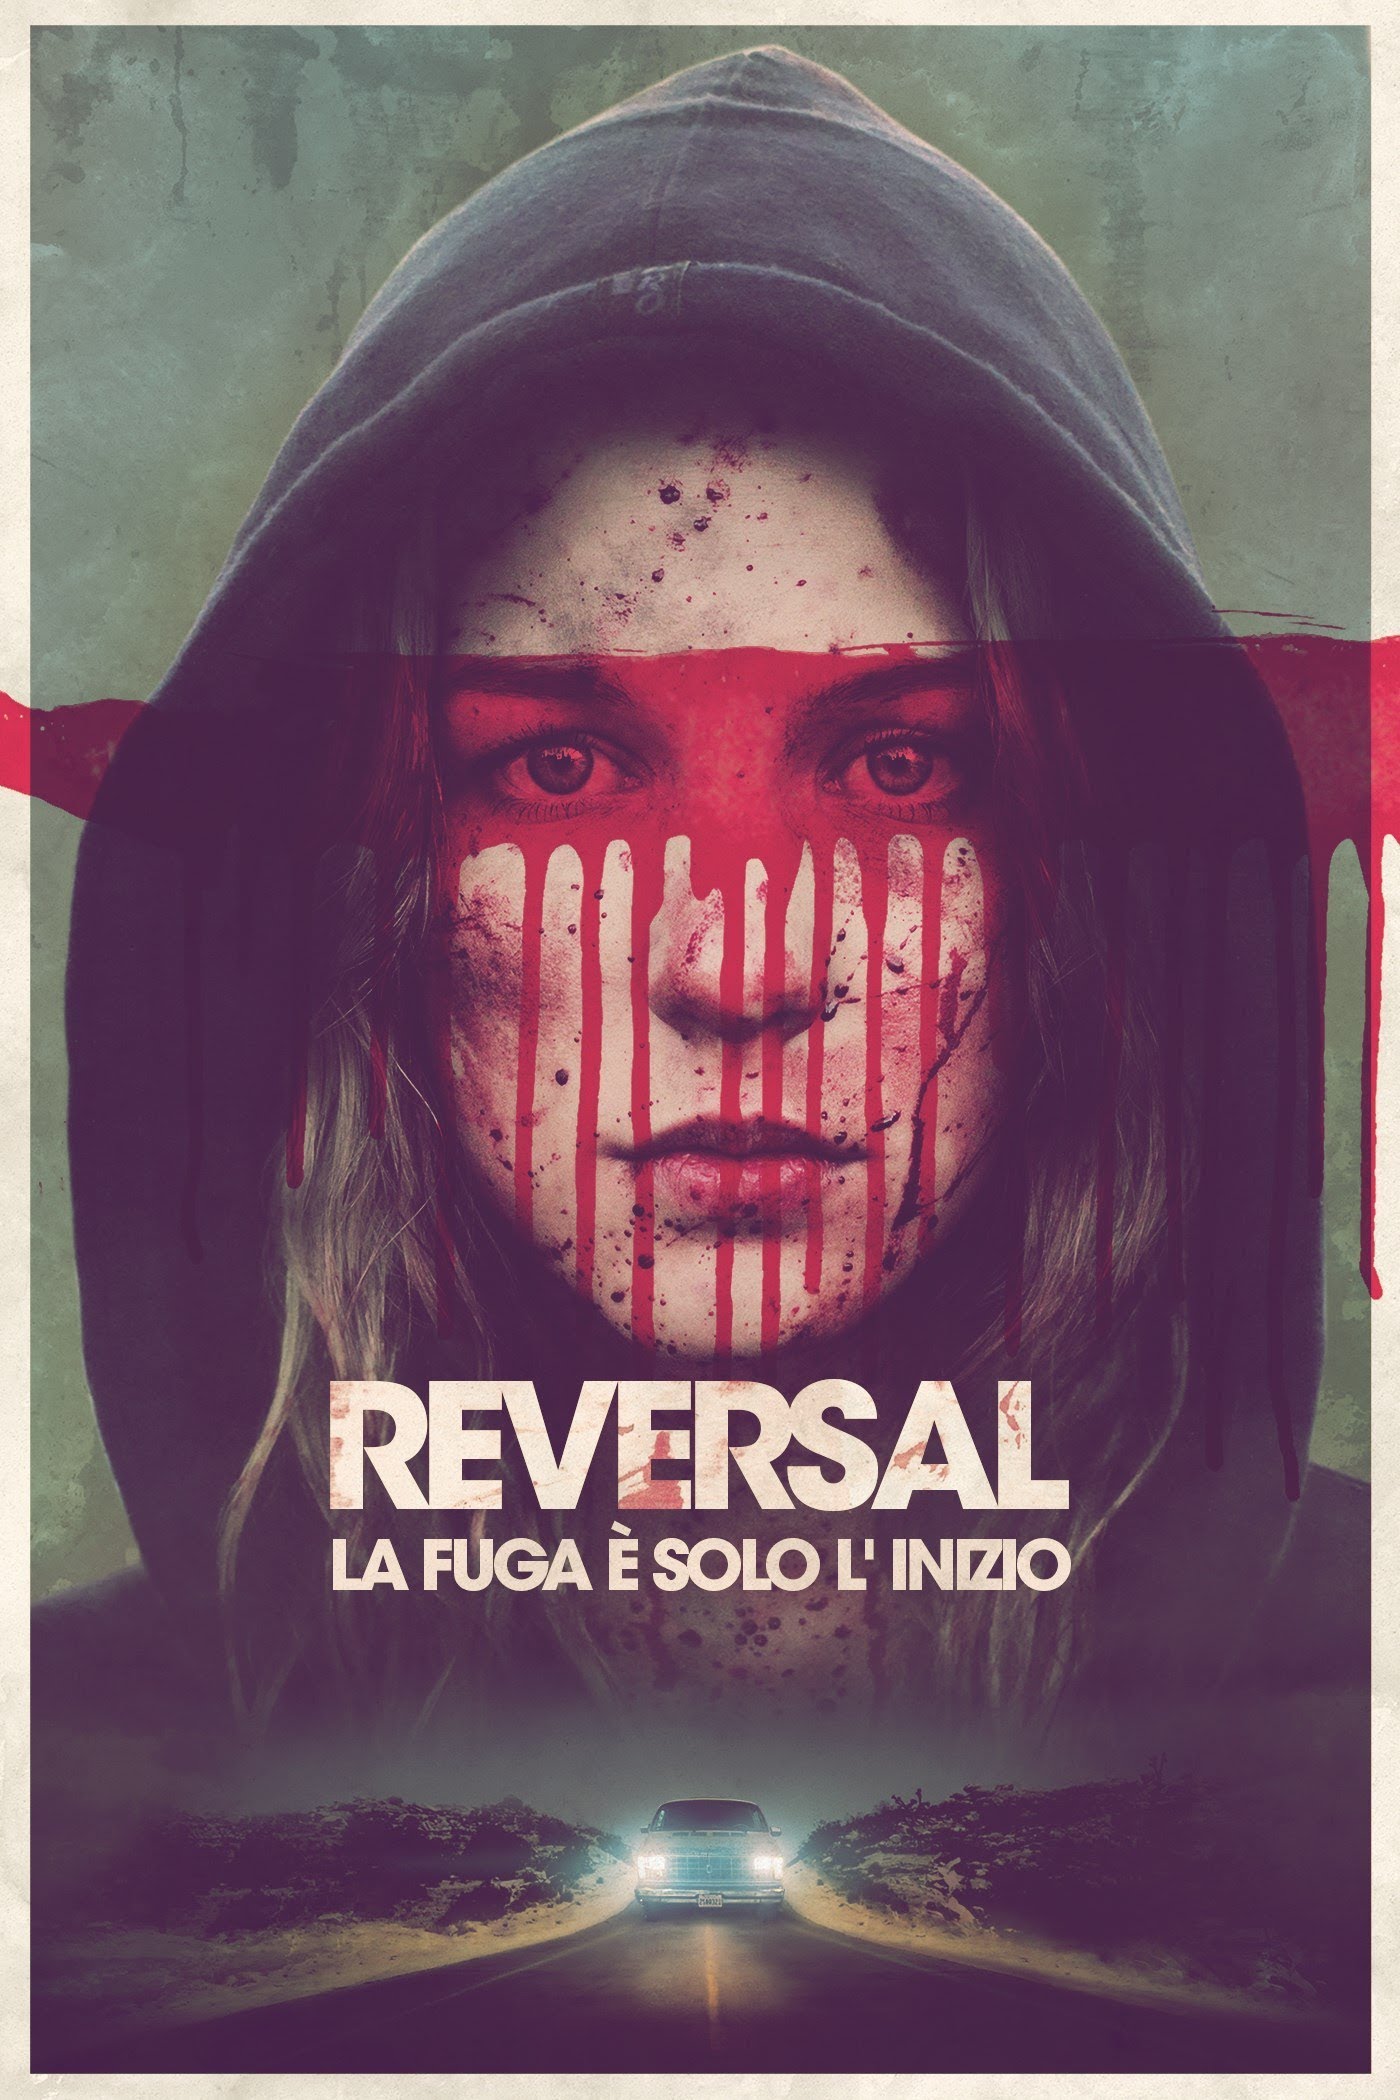 Reversal – La fuga è solo l’ inizio [HD] (2015)